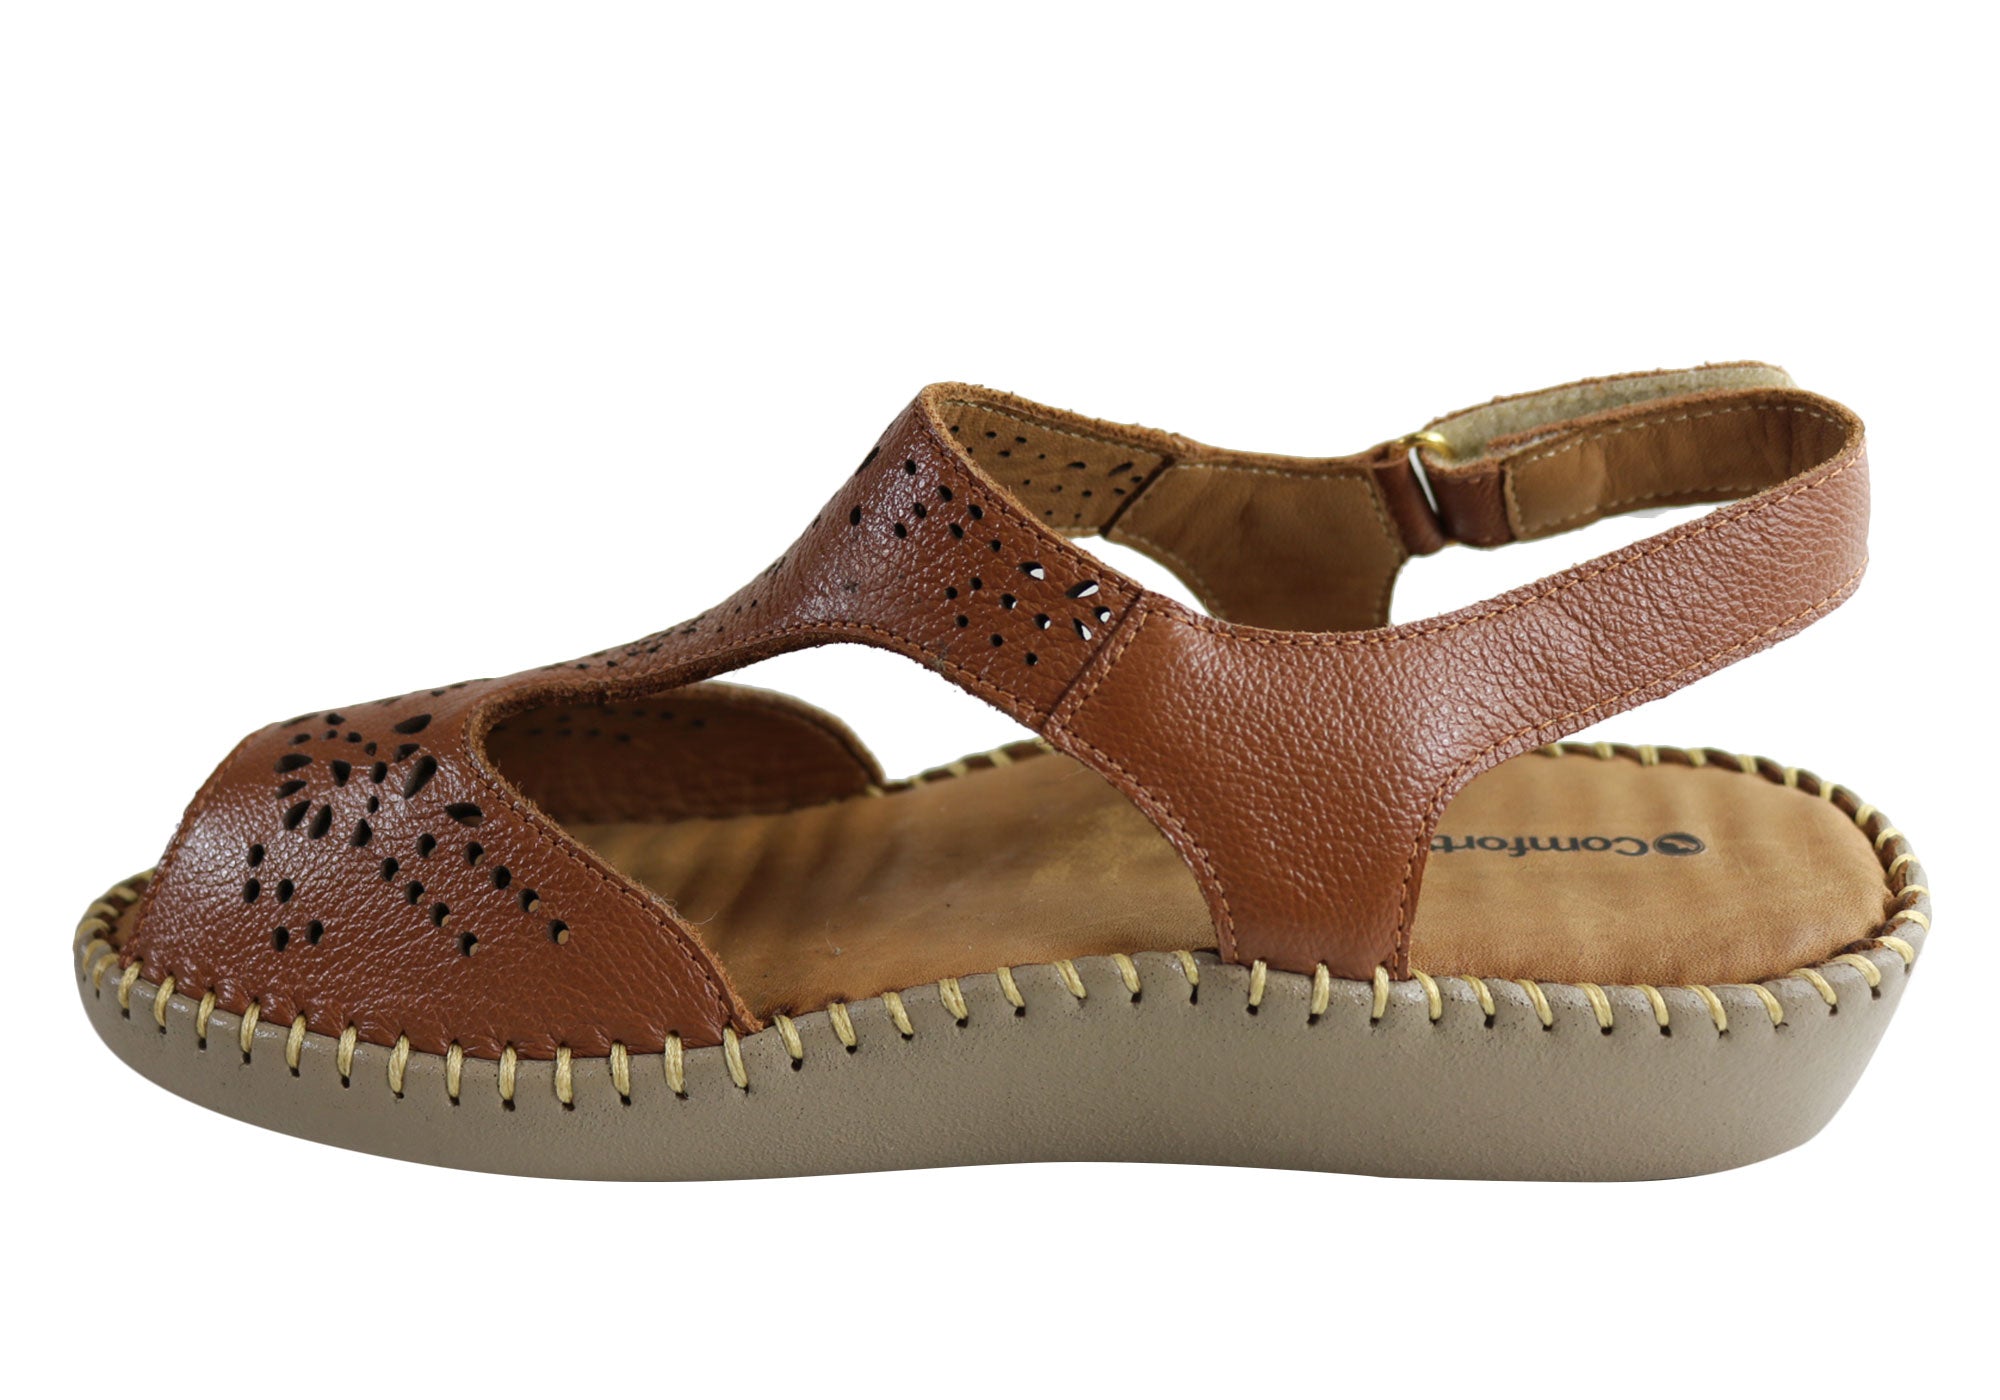 Comfortshoeco Maxine Womens Leather Brazilian Comfortable Sandals